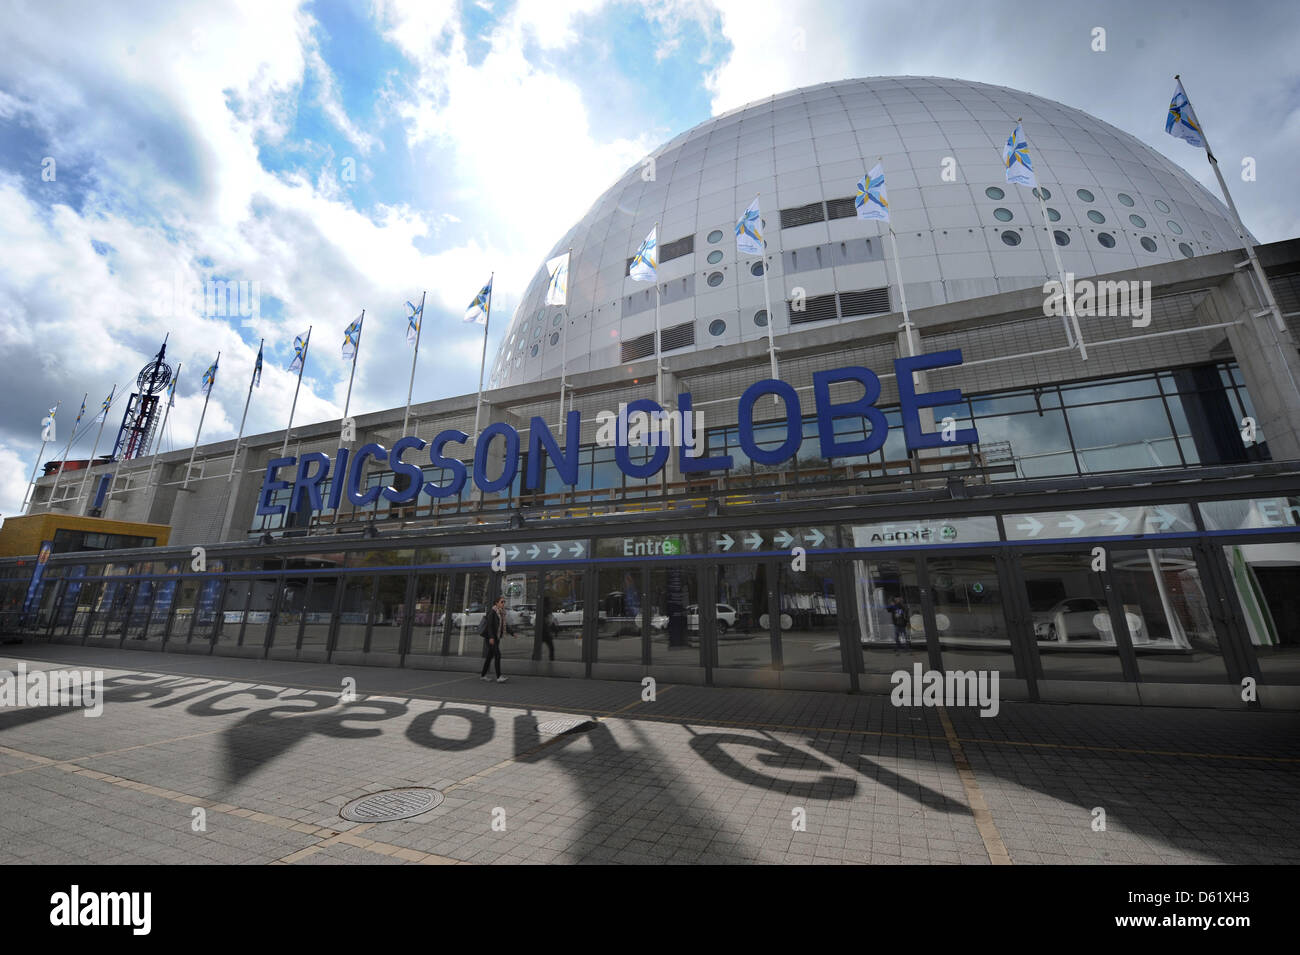 Die Ericsson Globe Arena aufgenommen am Samstag (05.05.2012) in Stockholm in Schweden. Vom 04.05. bis zum 20.05.2012 wird die Weltmeisterschaft im Eishockey in Stockholm (Schweden) und Helsinki (Finnland) ausgetragen. Foto: Peter Steffen dpa Stock Photo